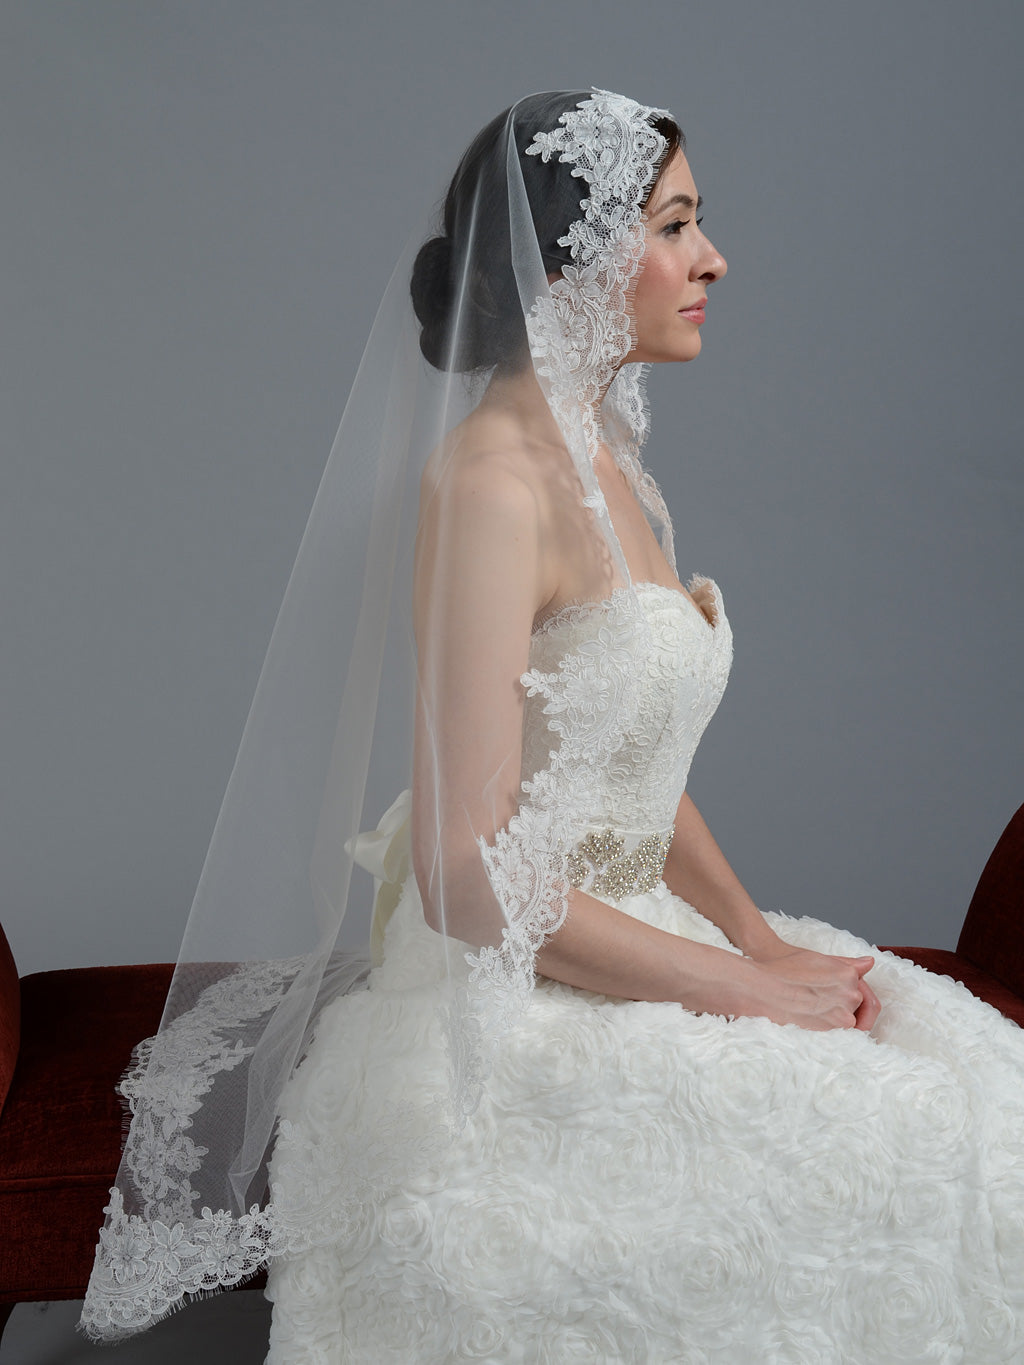 https://www.tulipbridal.com/cdn/shop/products/wedding-veil-045-side-2.jpg?v=1691384459&width=1445